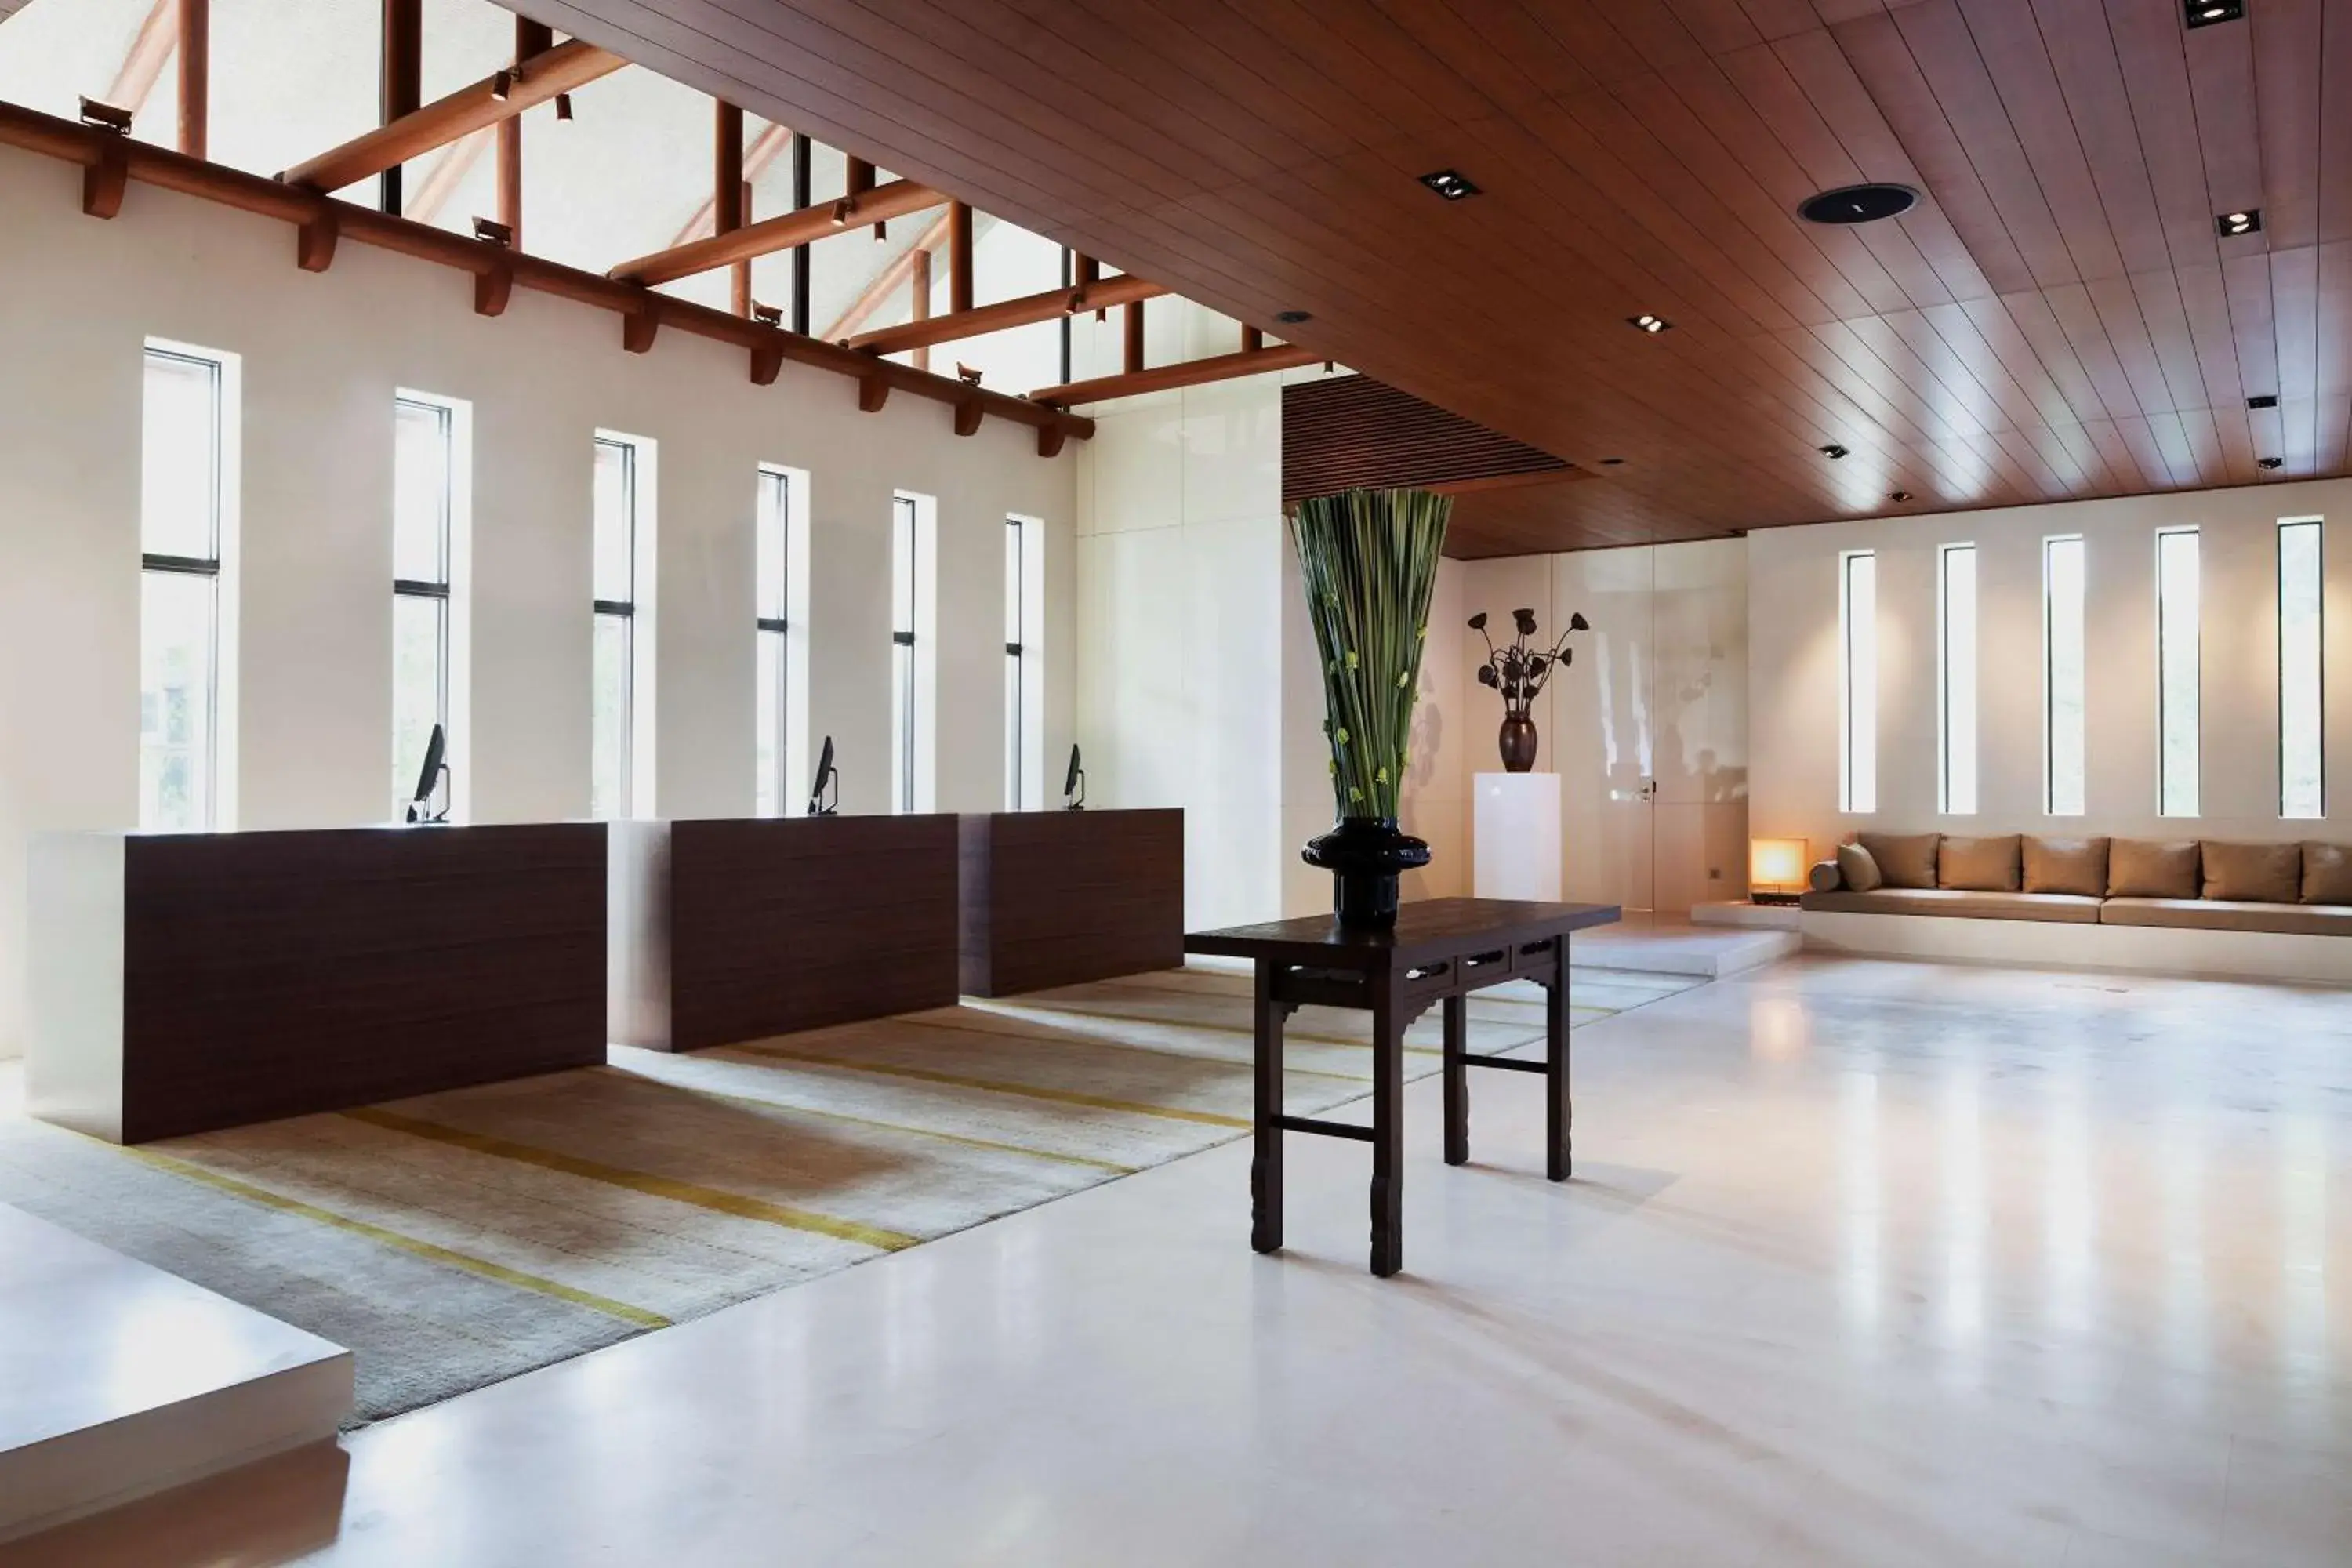 Lobby or reception in Park Hyatt Ningbo Resort & Spa